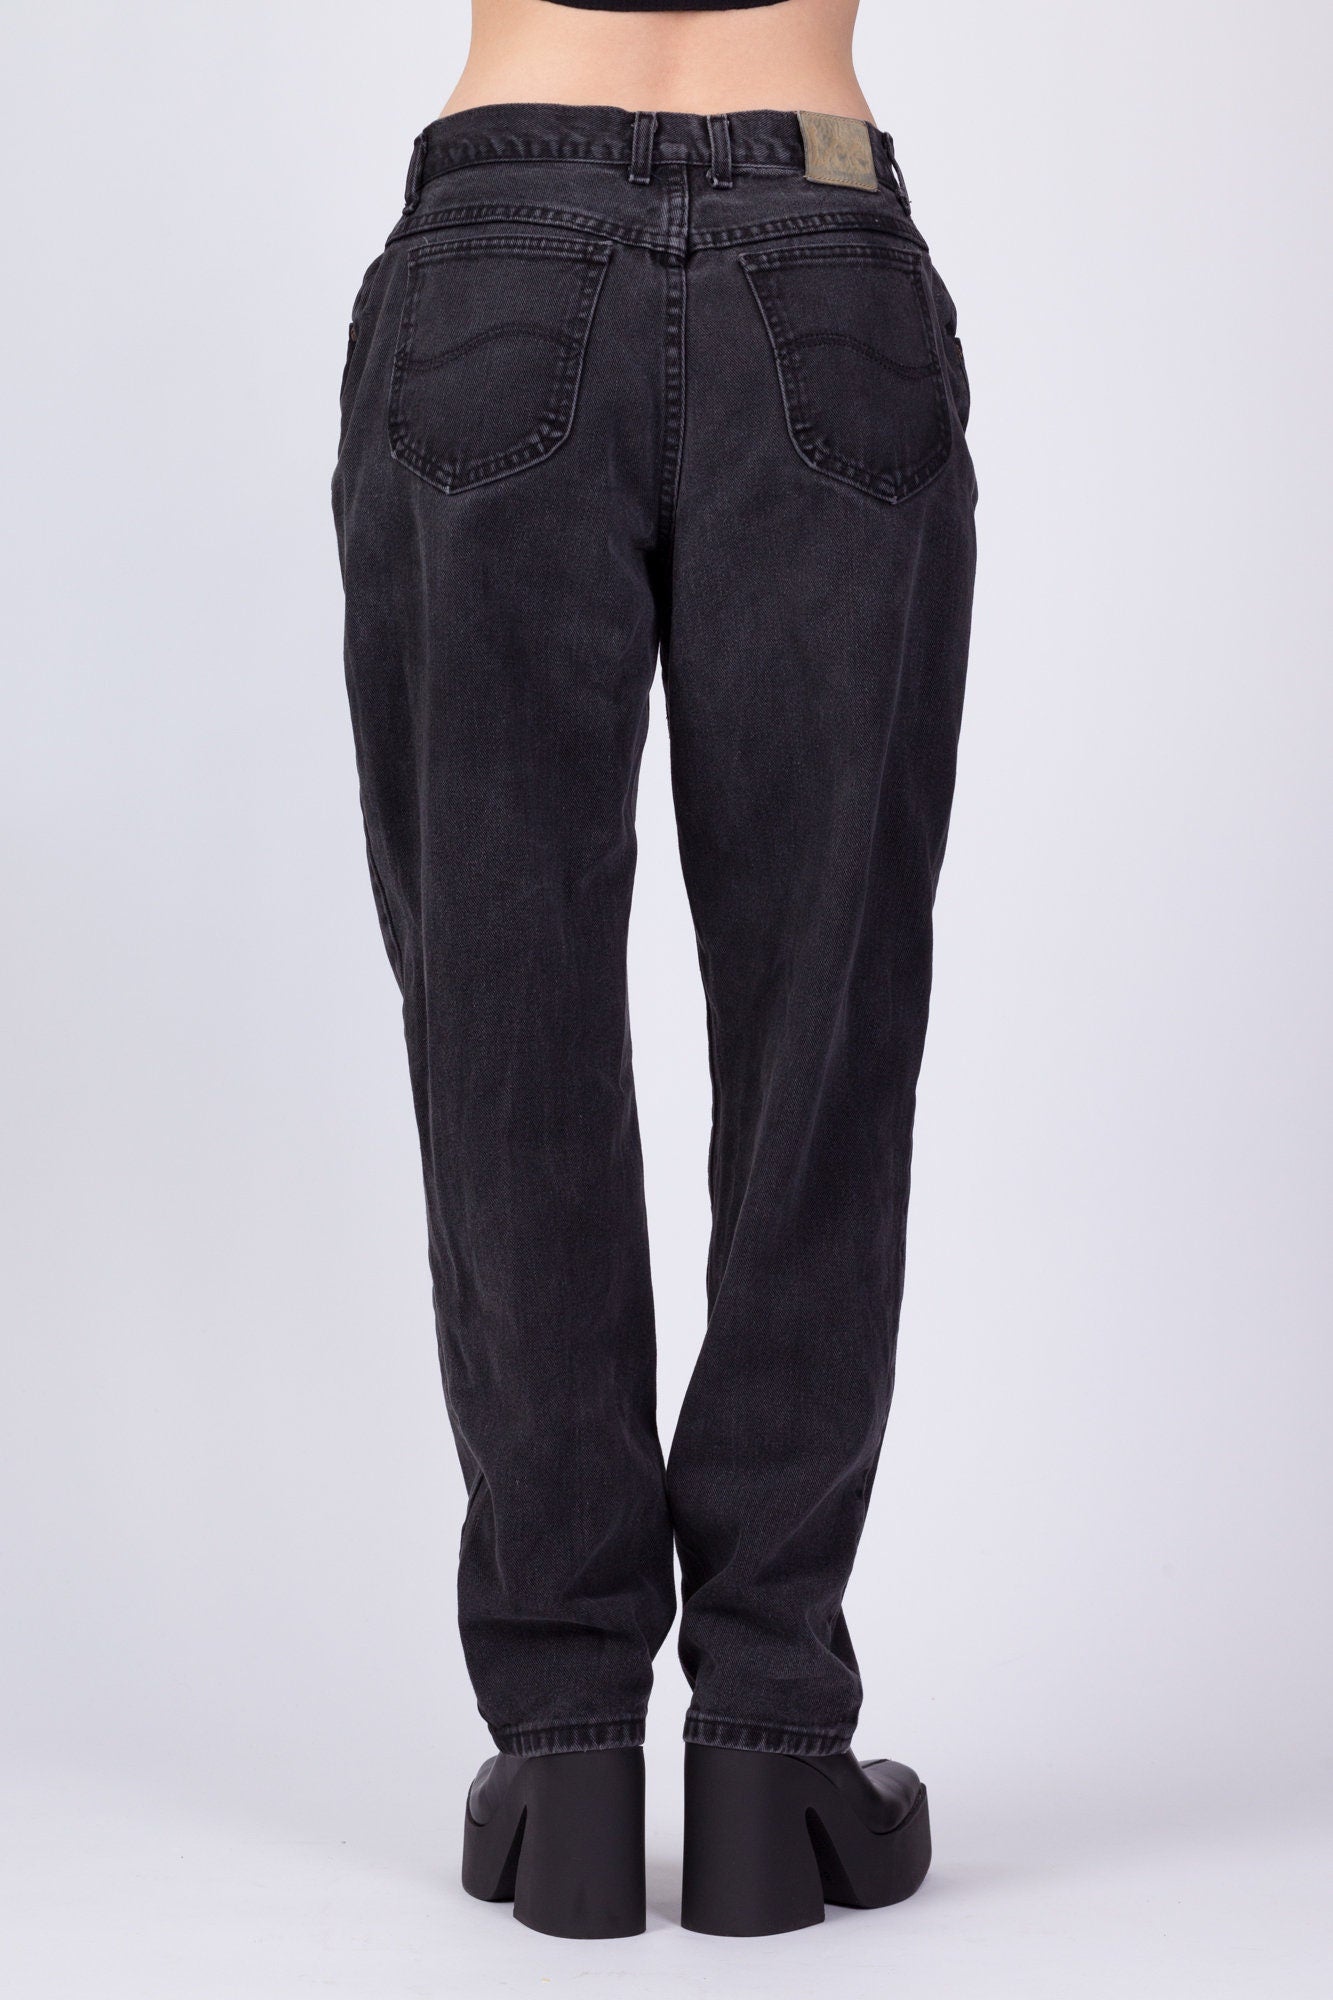 Vintage Lee Faded Black Jeans - Large, 31" 